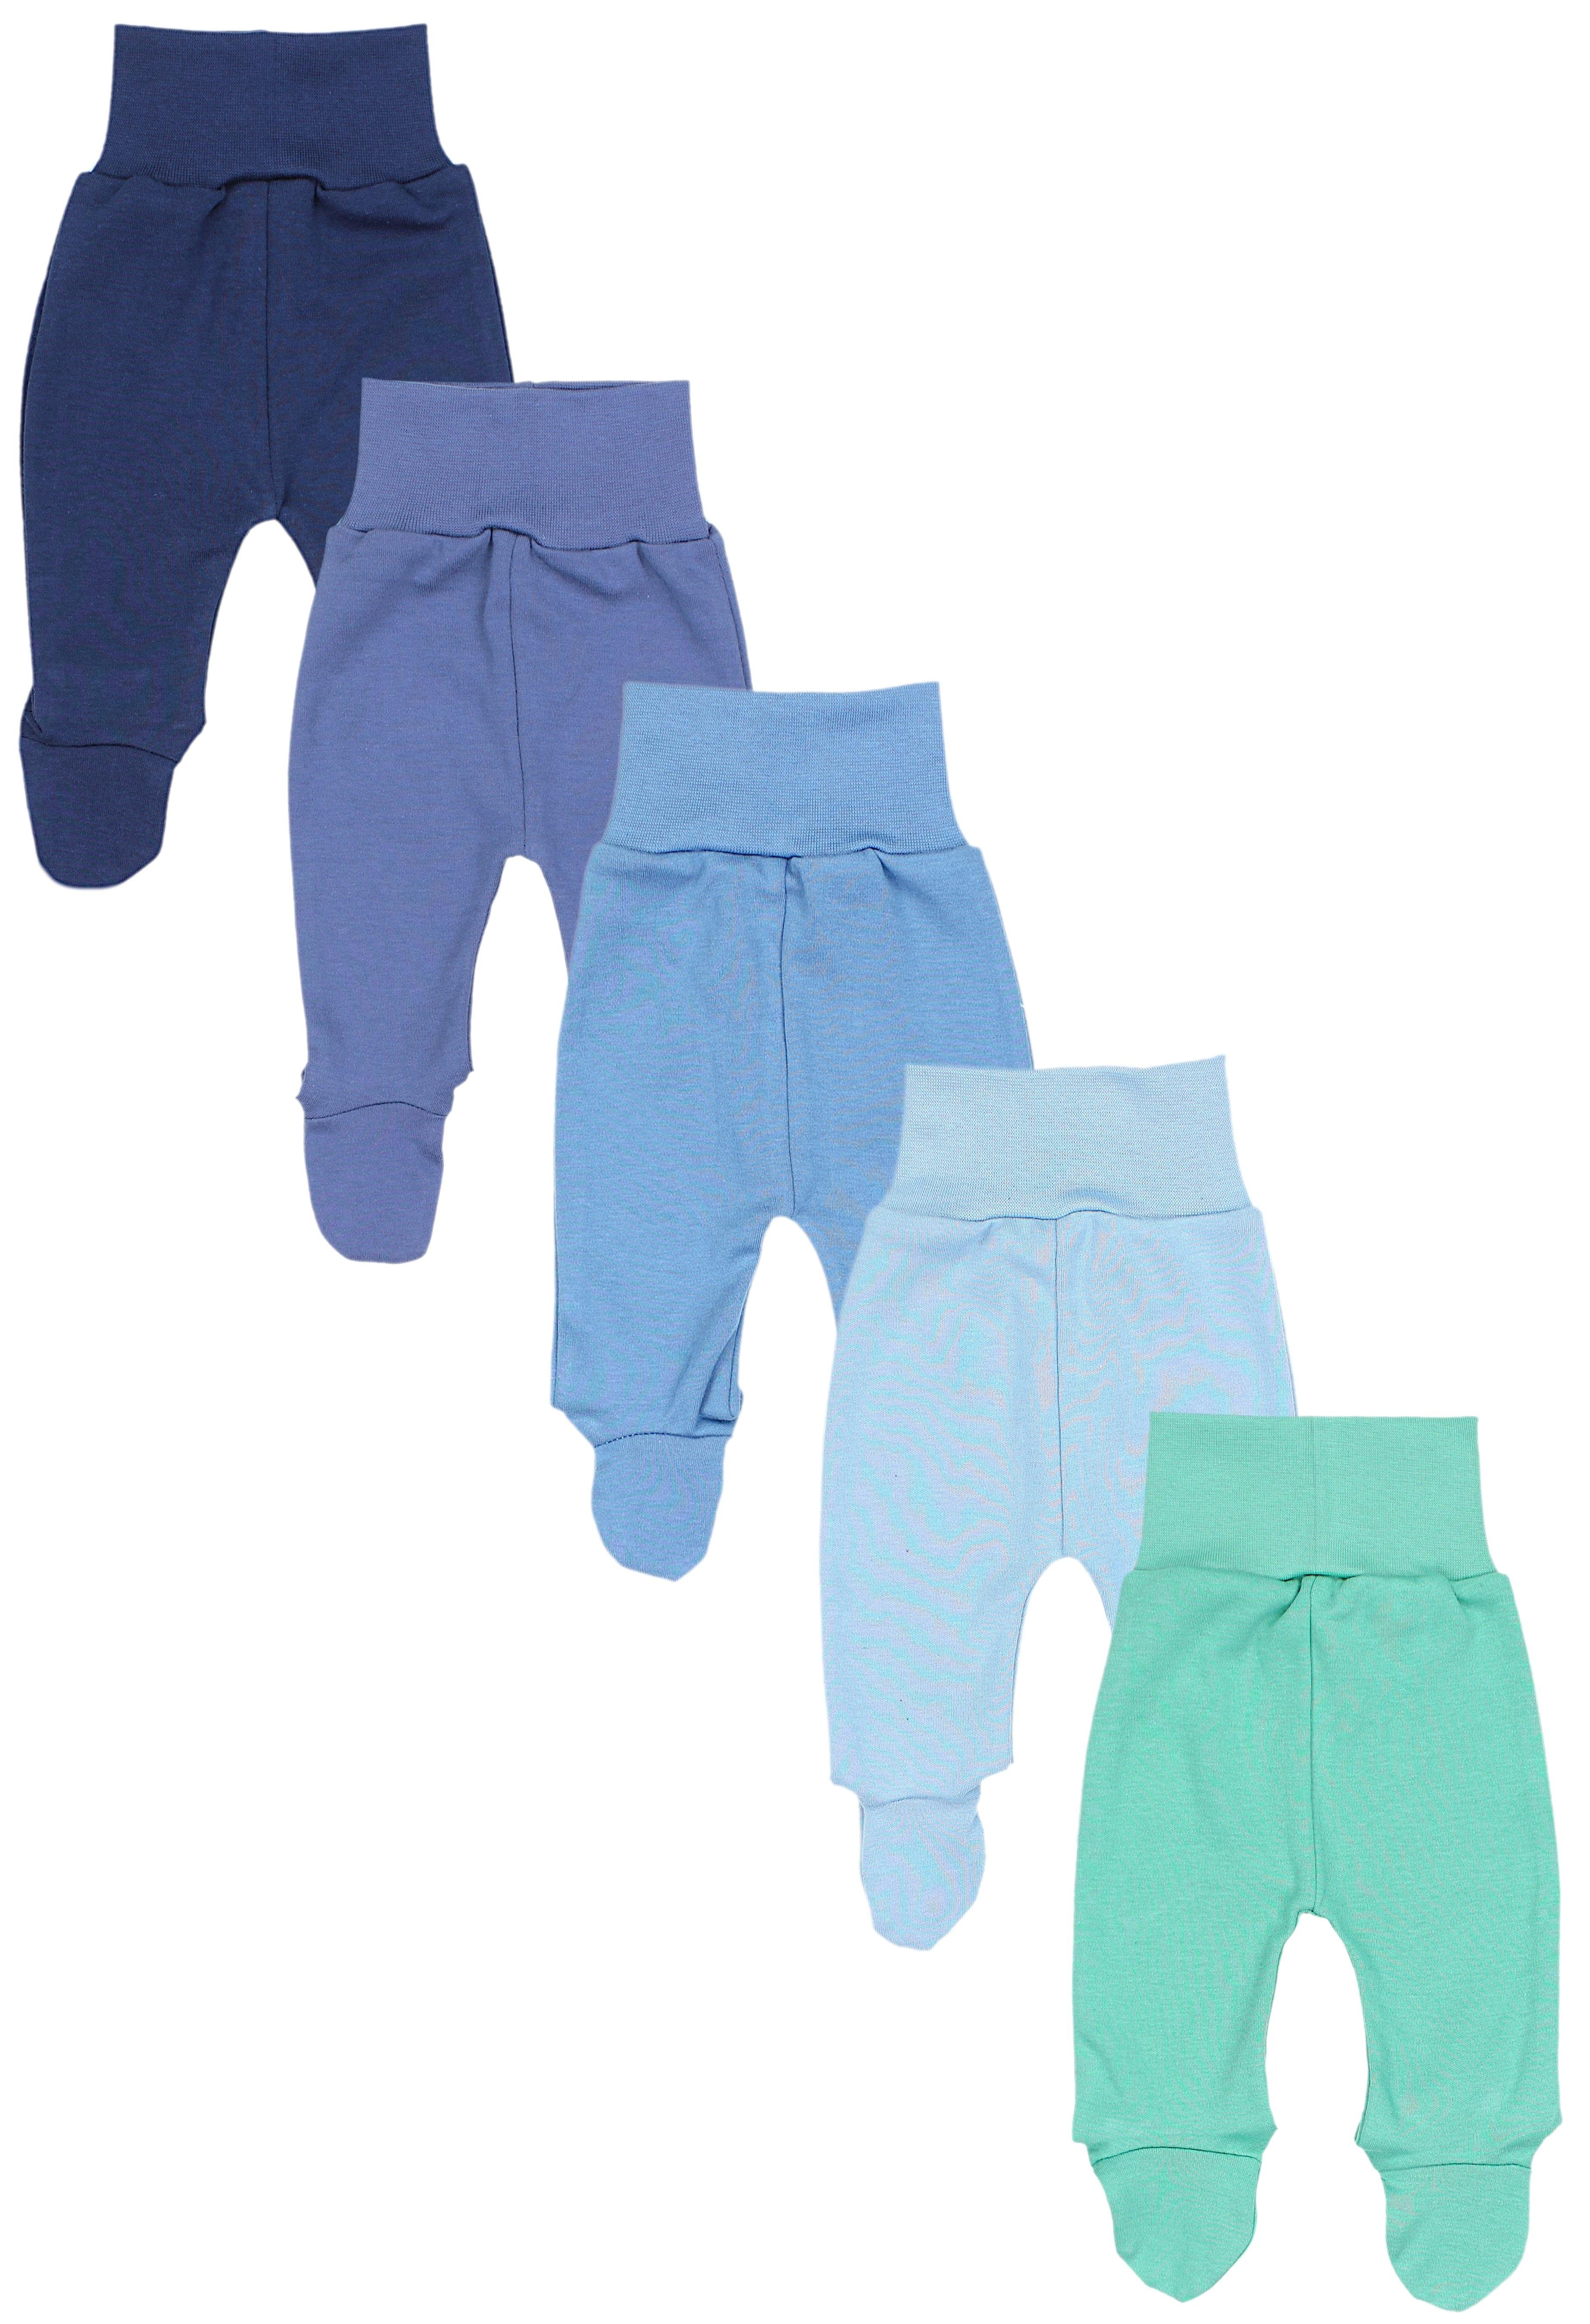 Vorzüglicher TupTam Schlupfhose TupTam Baby Jeans mit Bunte Mintgrün Hose Pack Blau Dunkelblau Unisex 5er Fuß